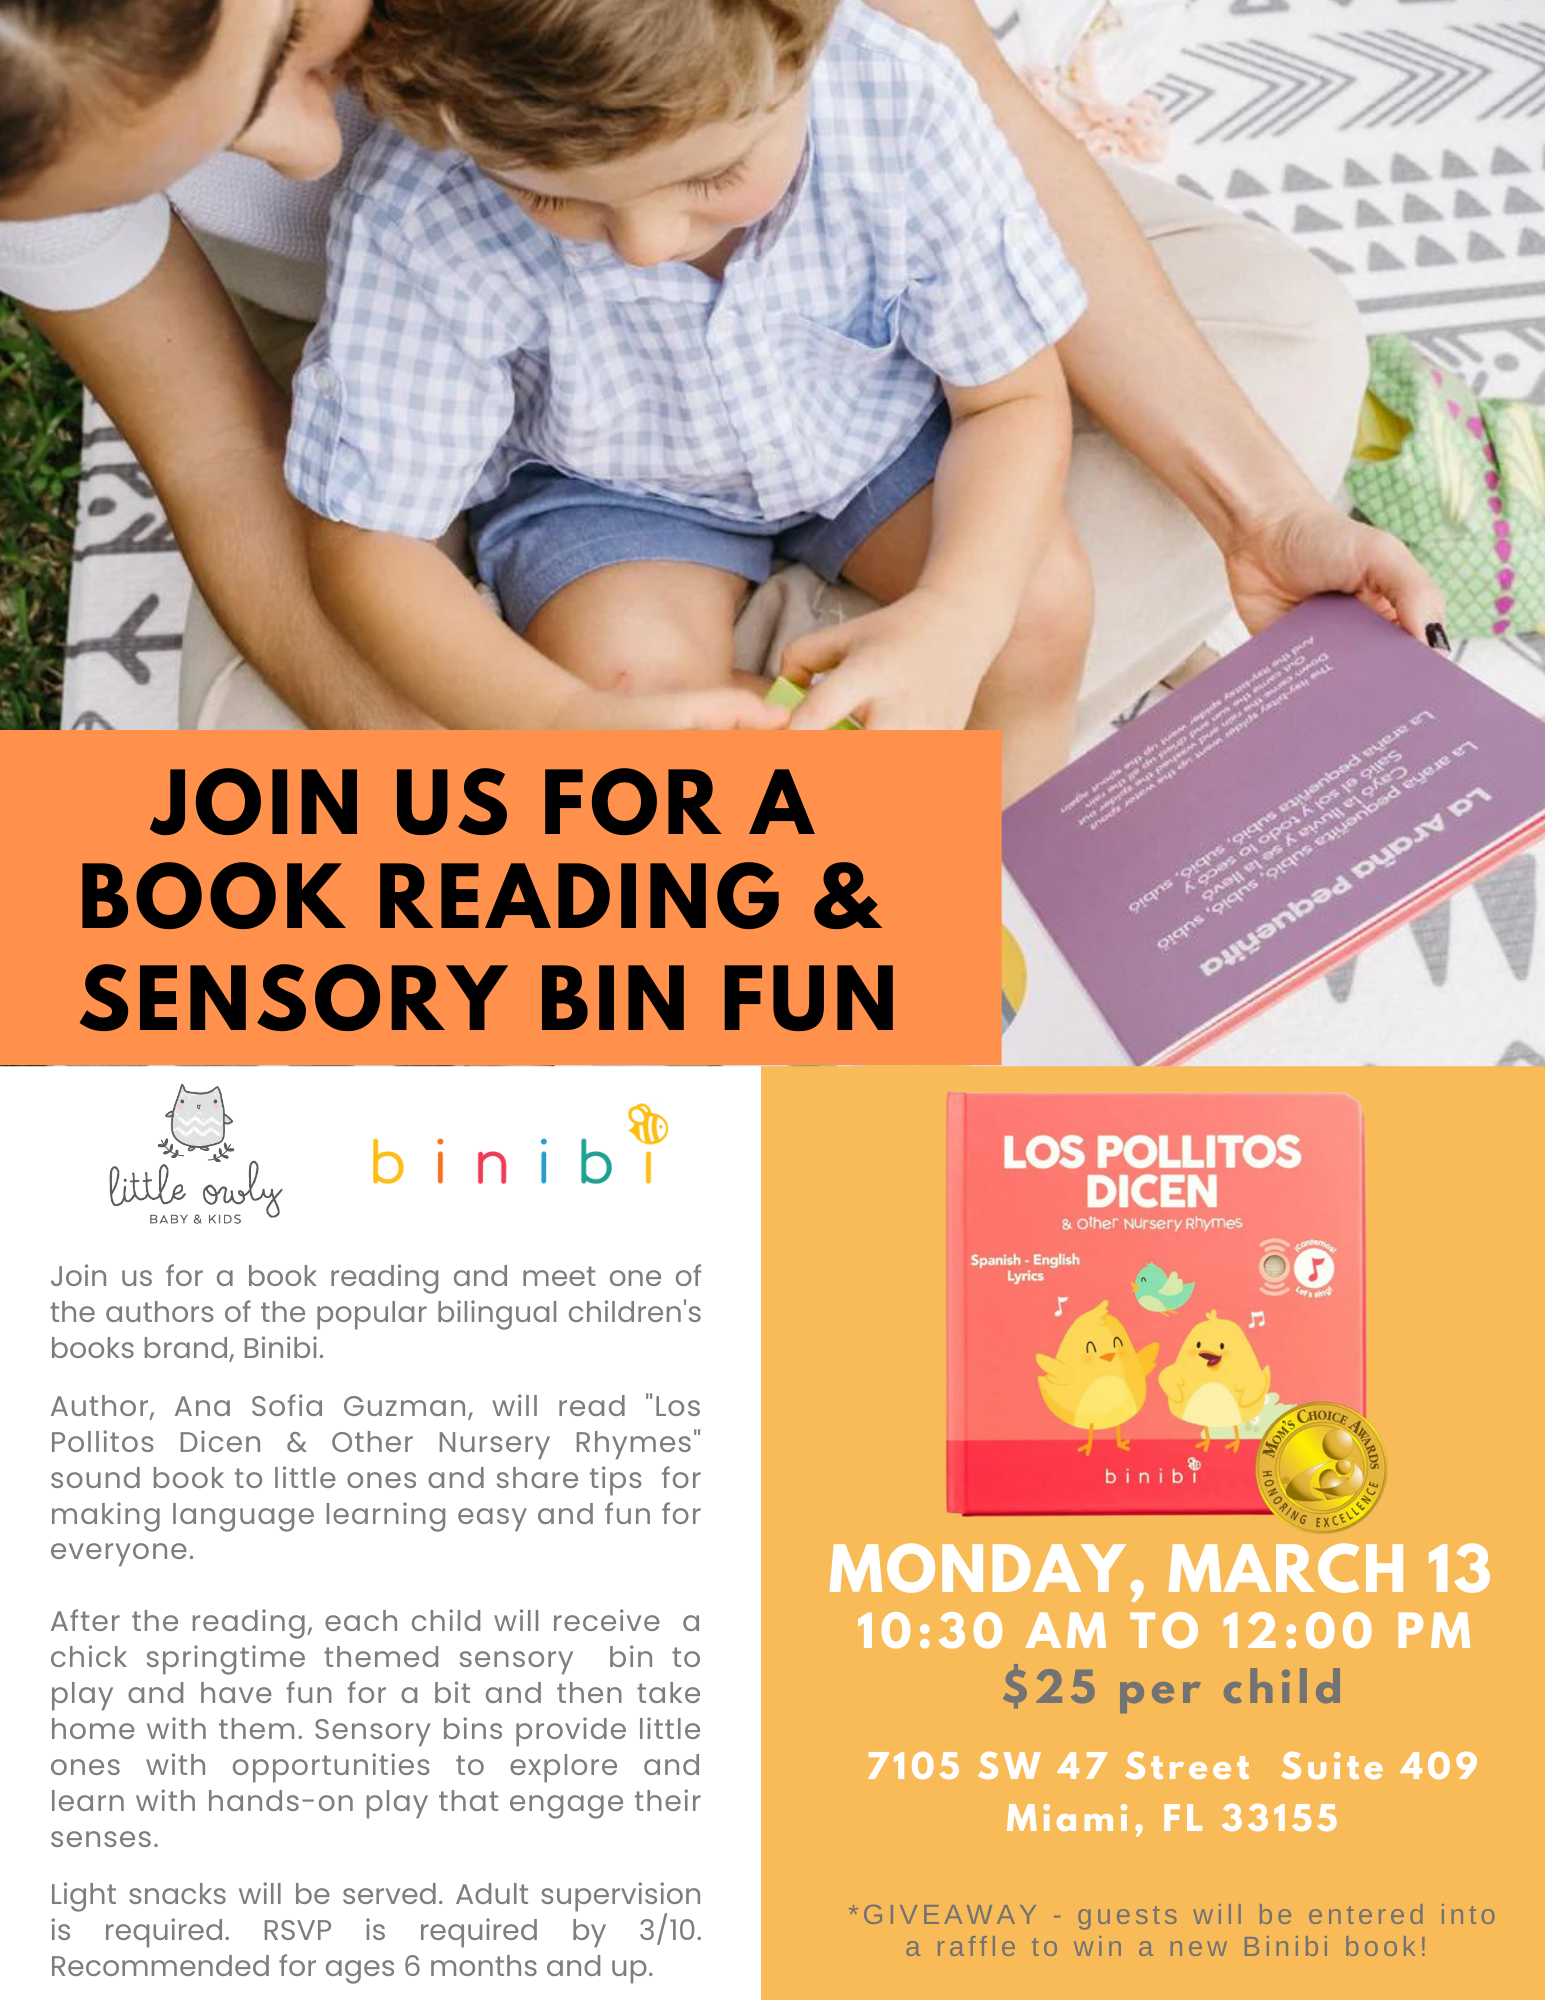 Binibi Book Reading and Sensory Bin Fun Event